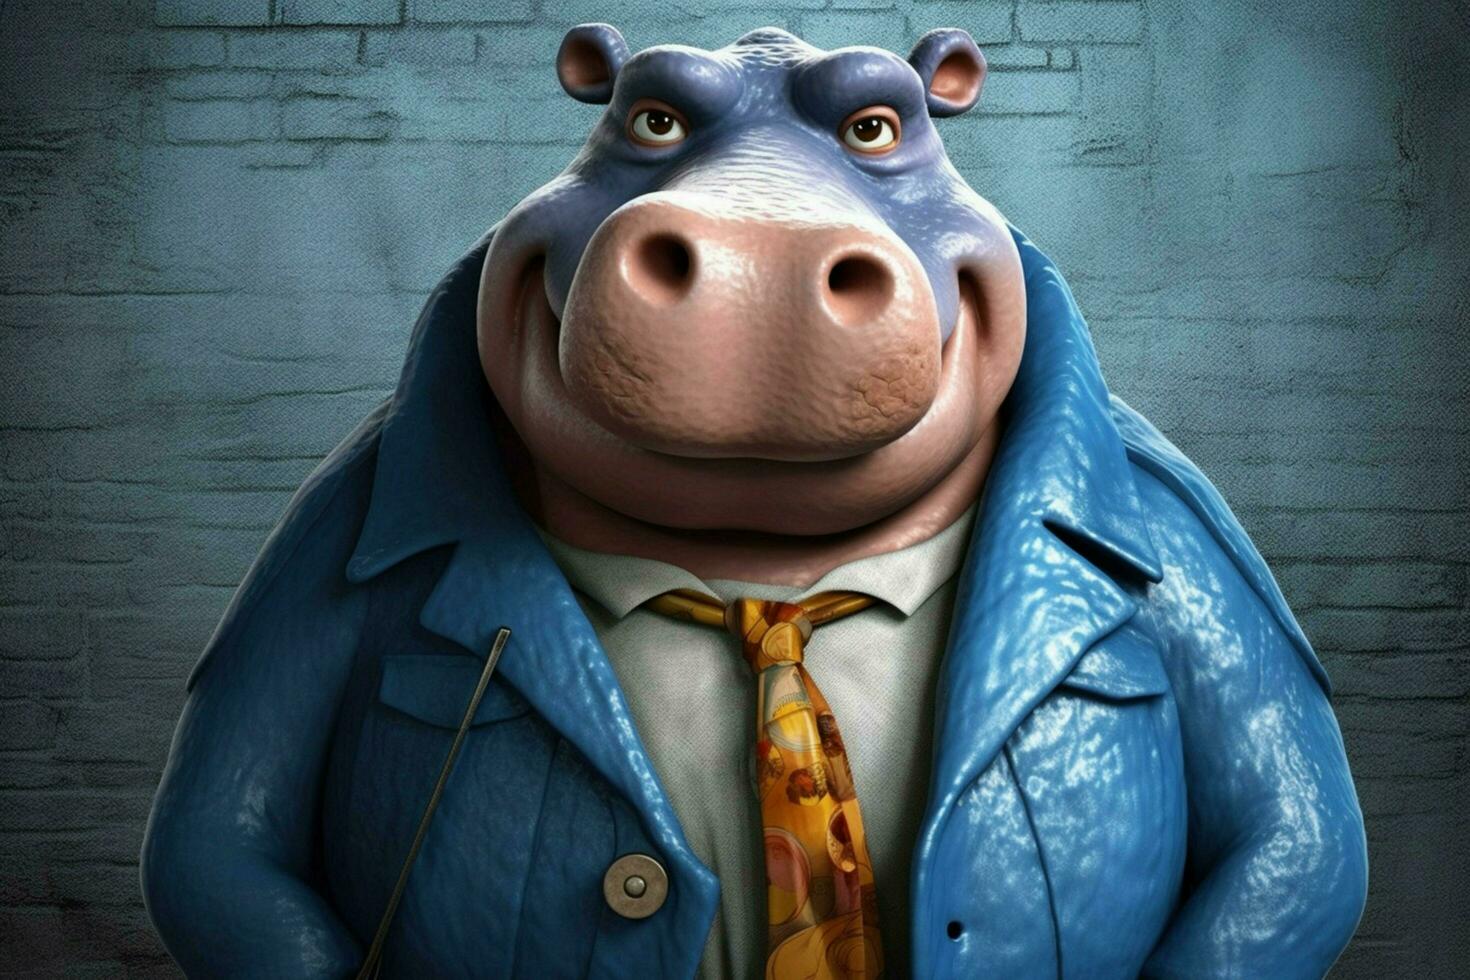 uma desenho animado hipopótamo com uma azul Jaqueta e azul olhos foto